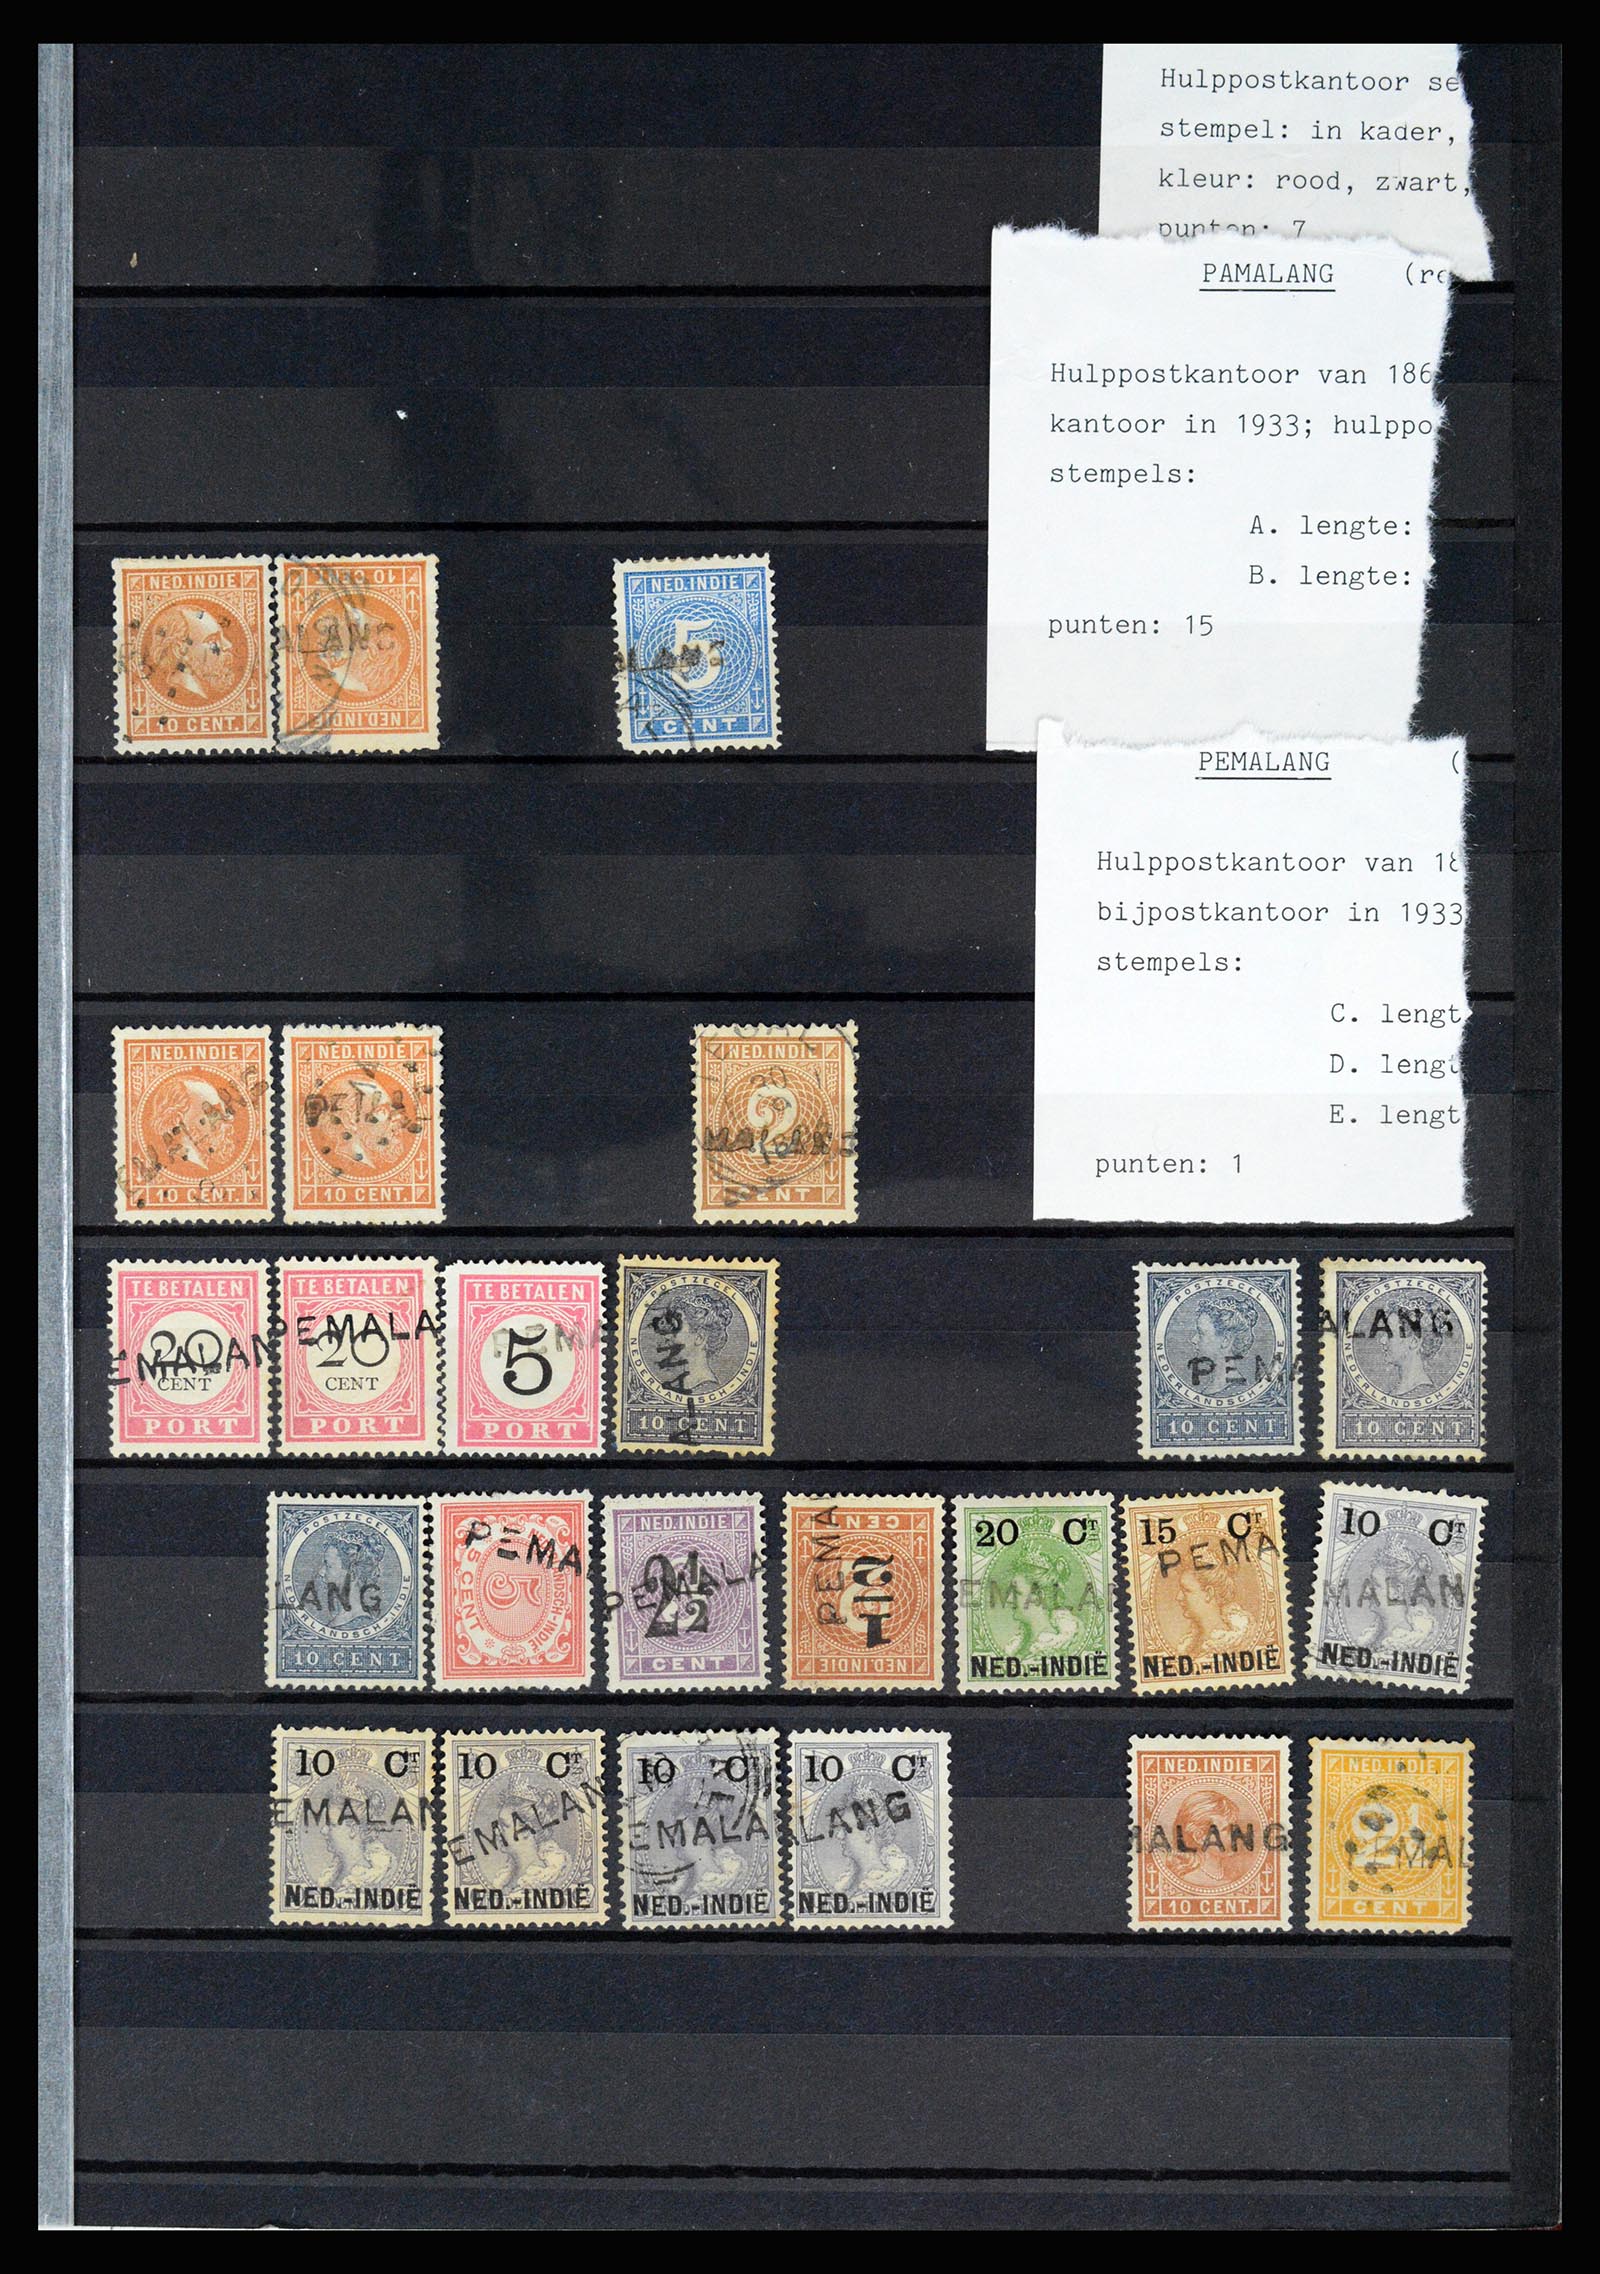 36512 049 - Stamp collection 36512 Nederlands Indië stempels 1872-1930.